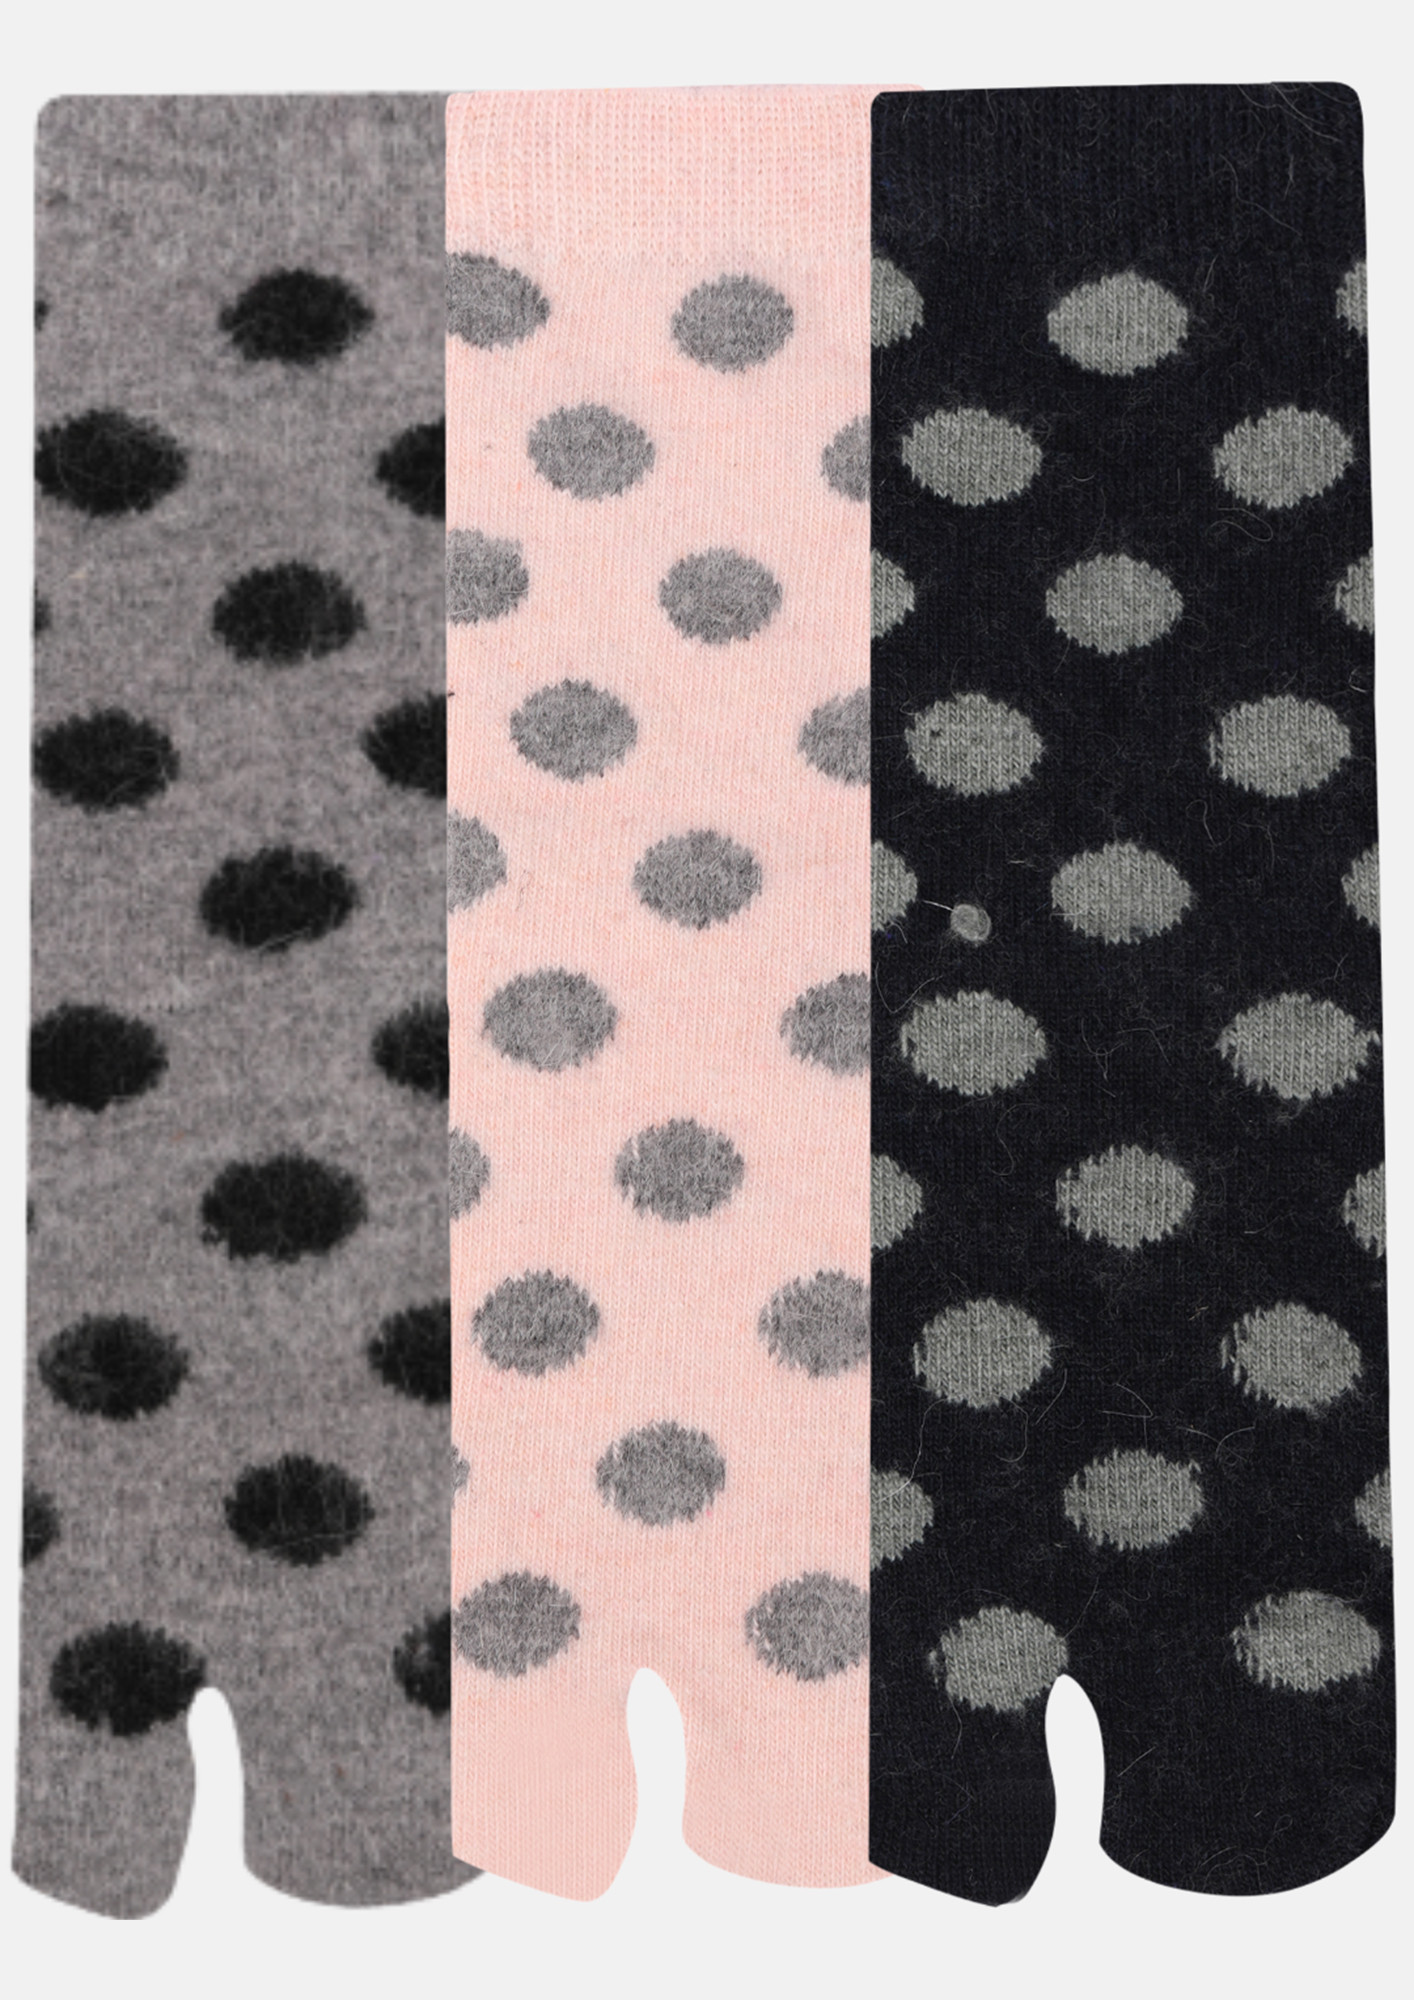 NEXT2SKIN Woollen Ankle length Women Thumb Socks (Pack of 3) (LightGray,Peach,Navy Blue) 3821-LGPEN